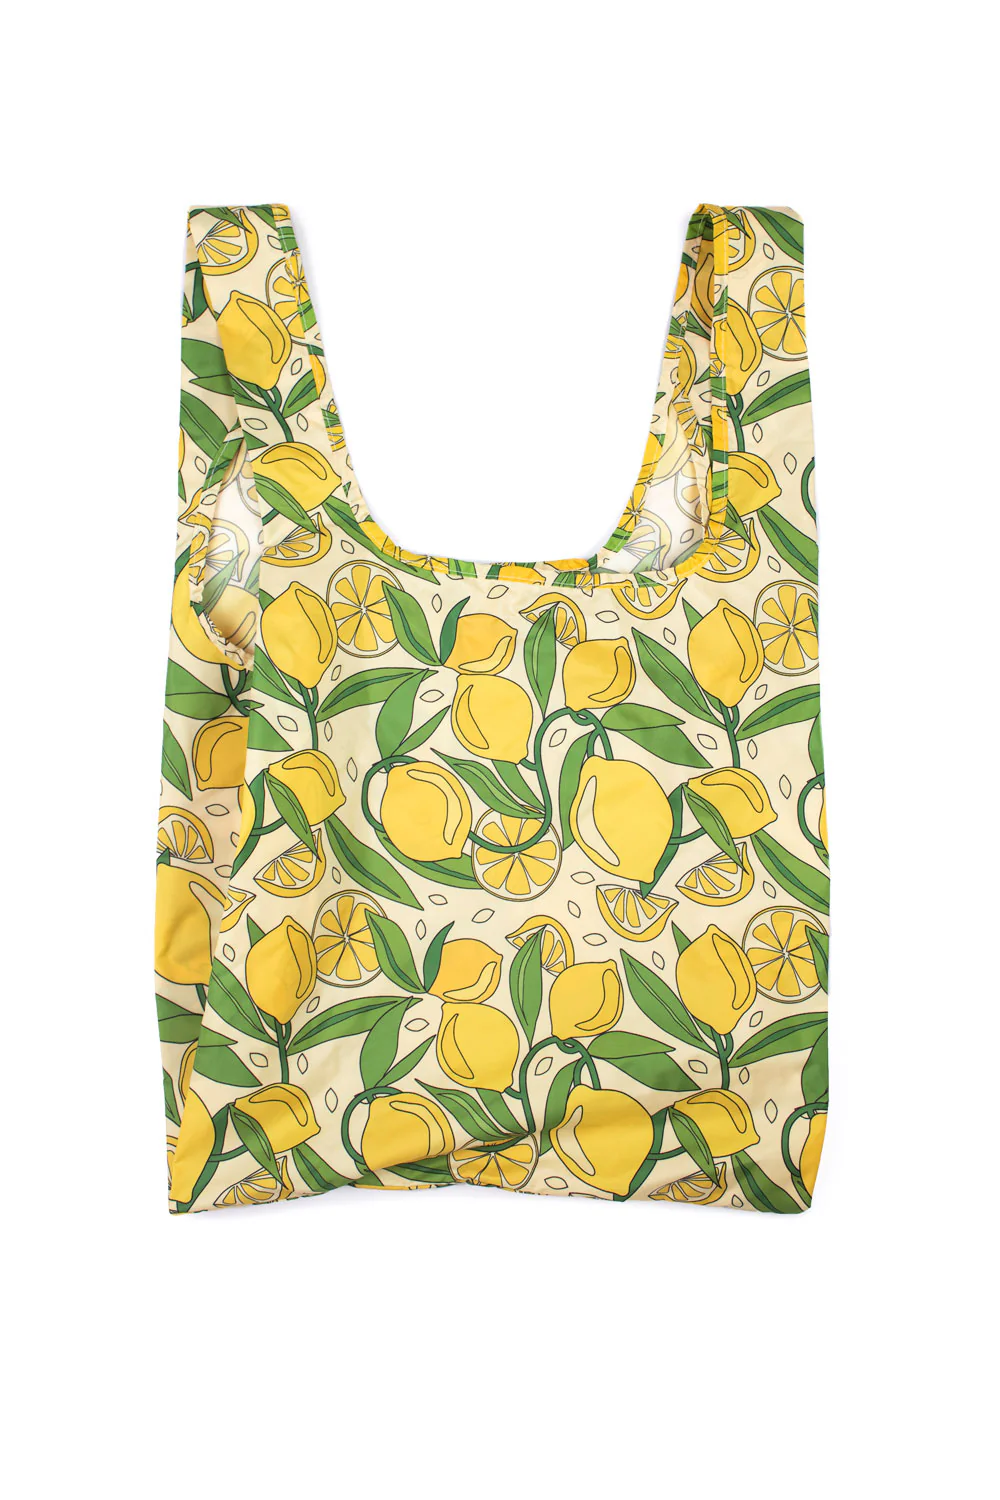 kind-bag-reusable-shopping-bag-lemons